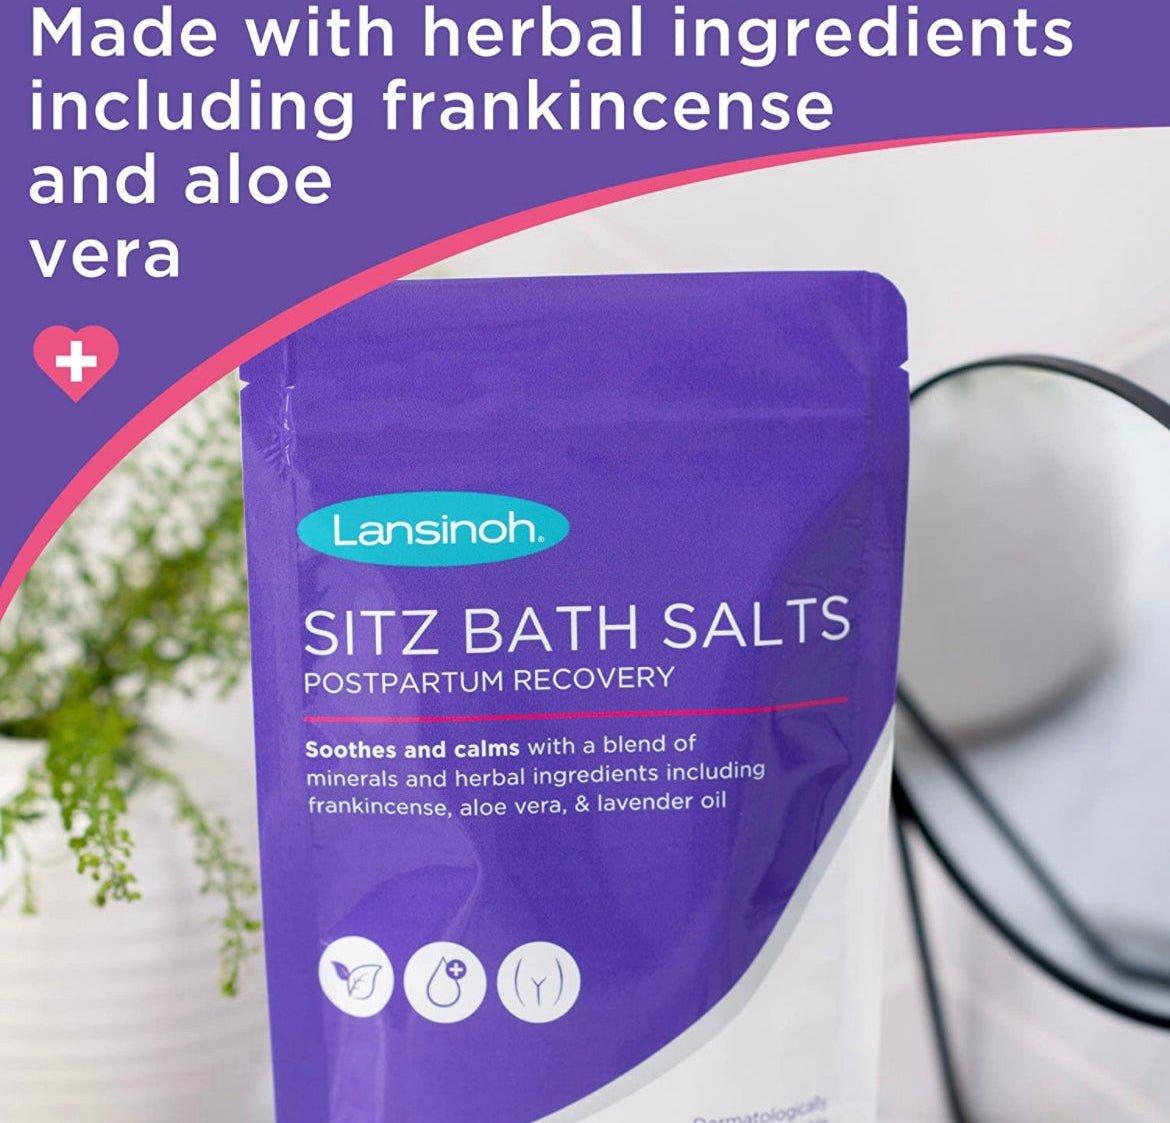 Lansinoh Sitz Bath Salts Postpartum Essentials, White, 10 Oz.